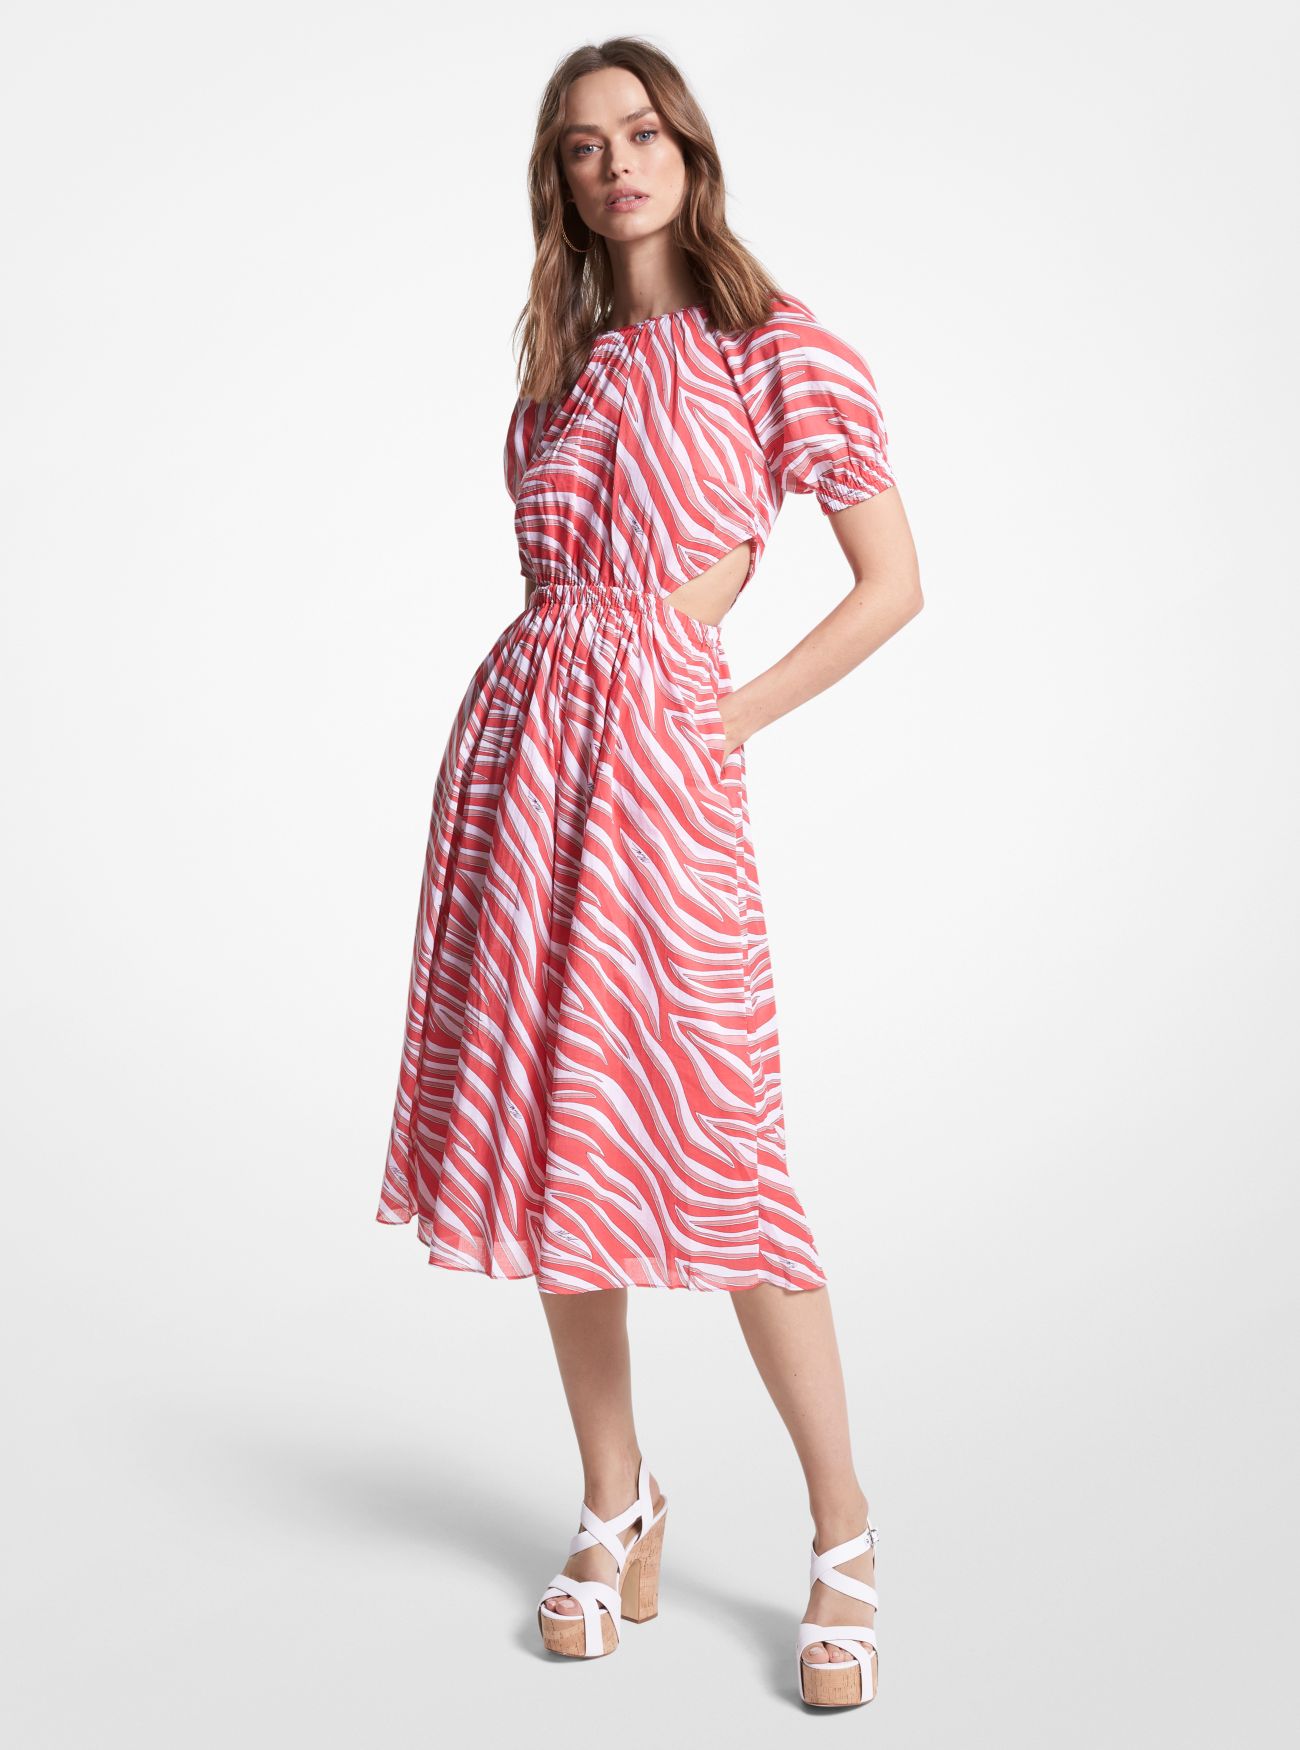 MK Zebra Print Cotton Lawn Cutout Dress - Geranium - Michael Kors